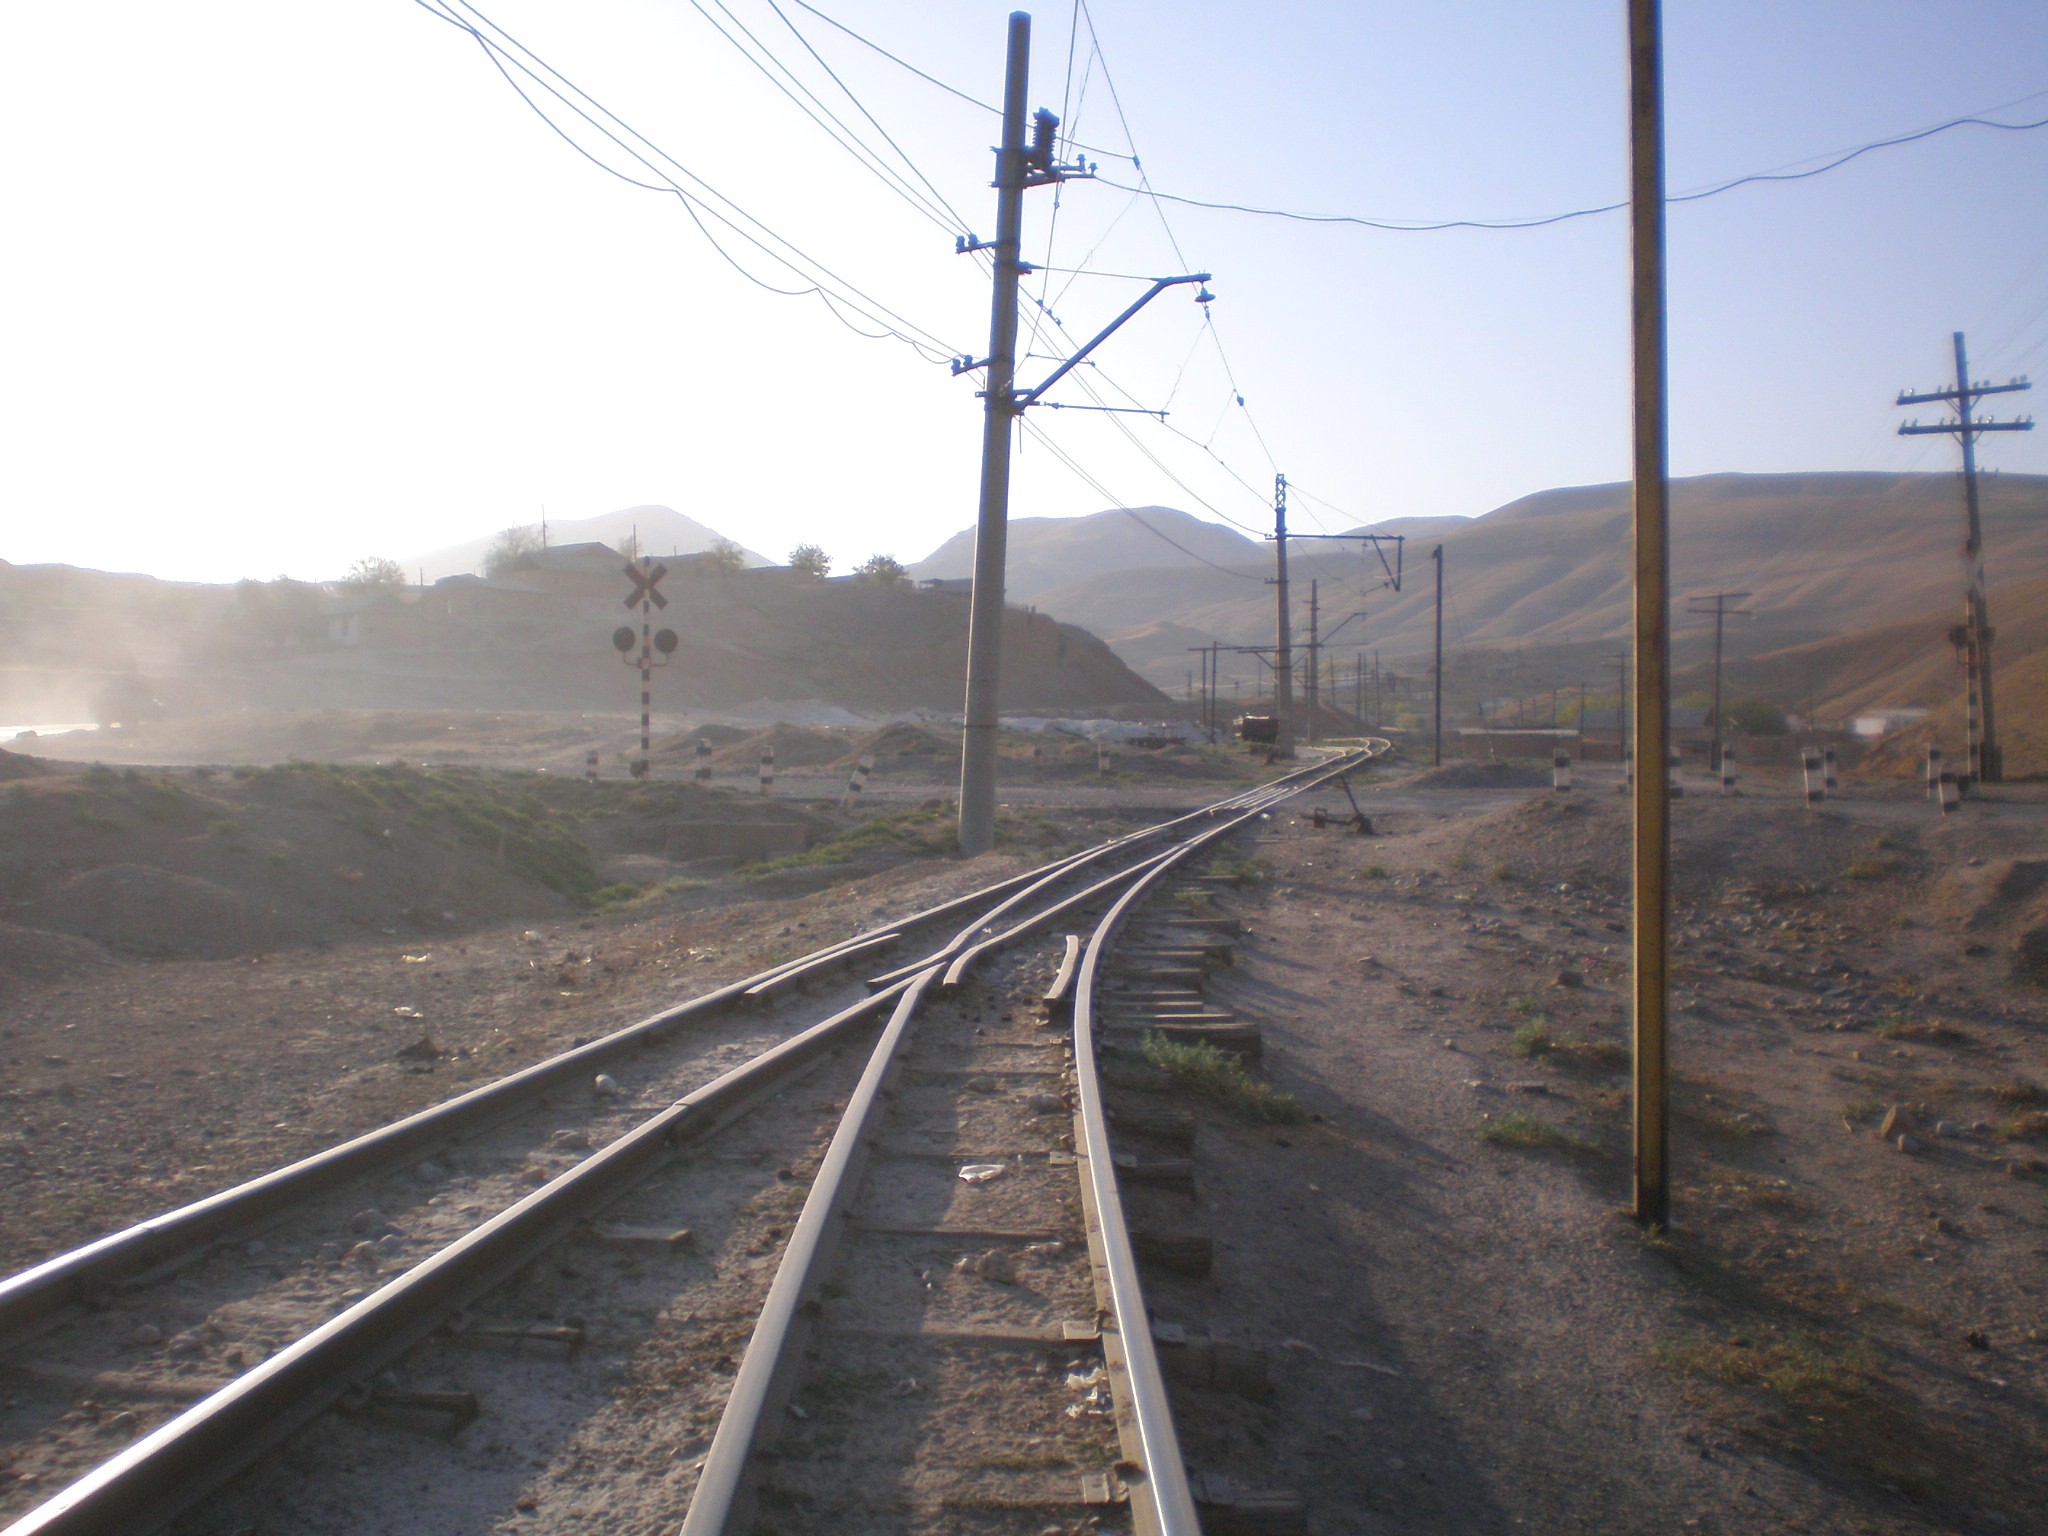 Сулюктинская узкоколейная железная дорога  —  фотографии, сделанные в 2008 году (часть 34)